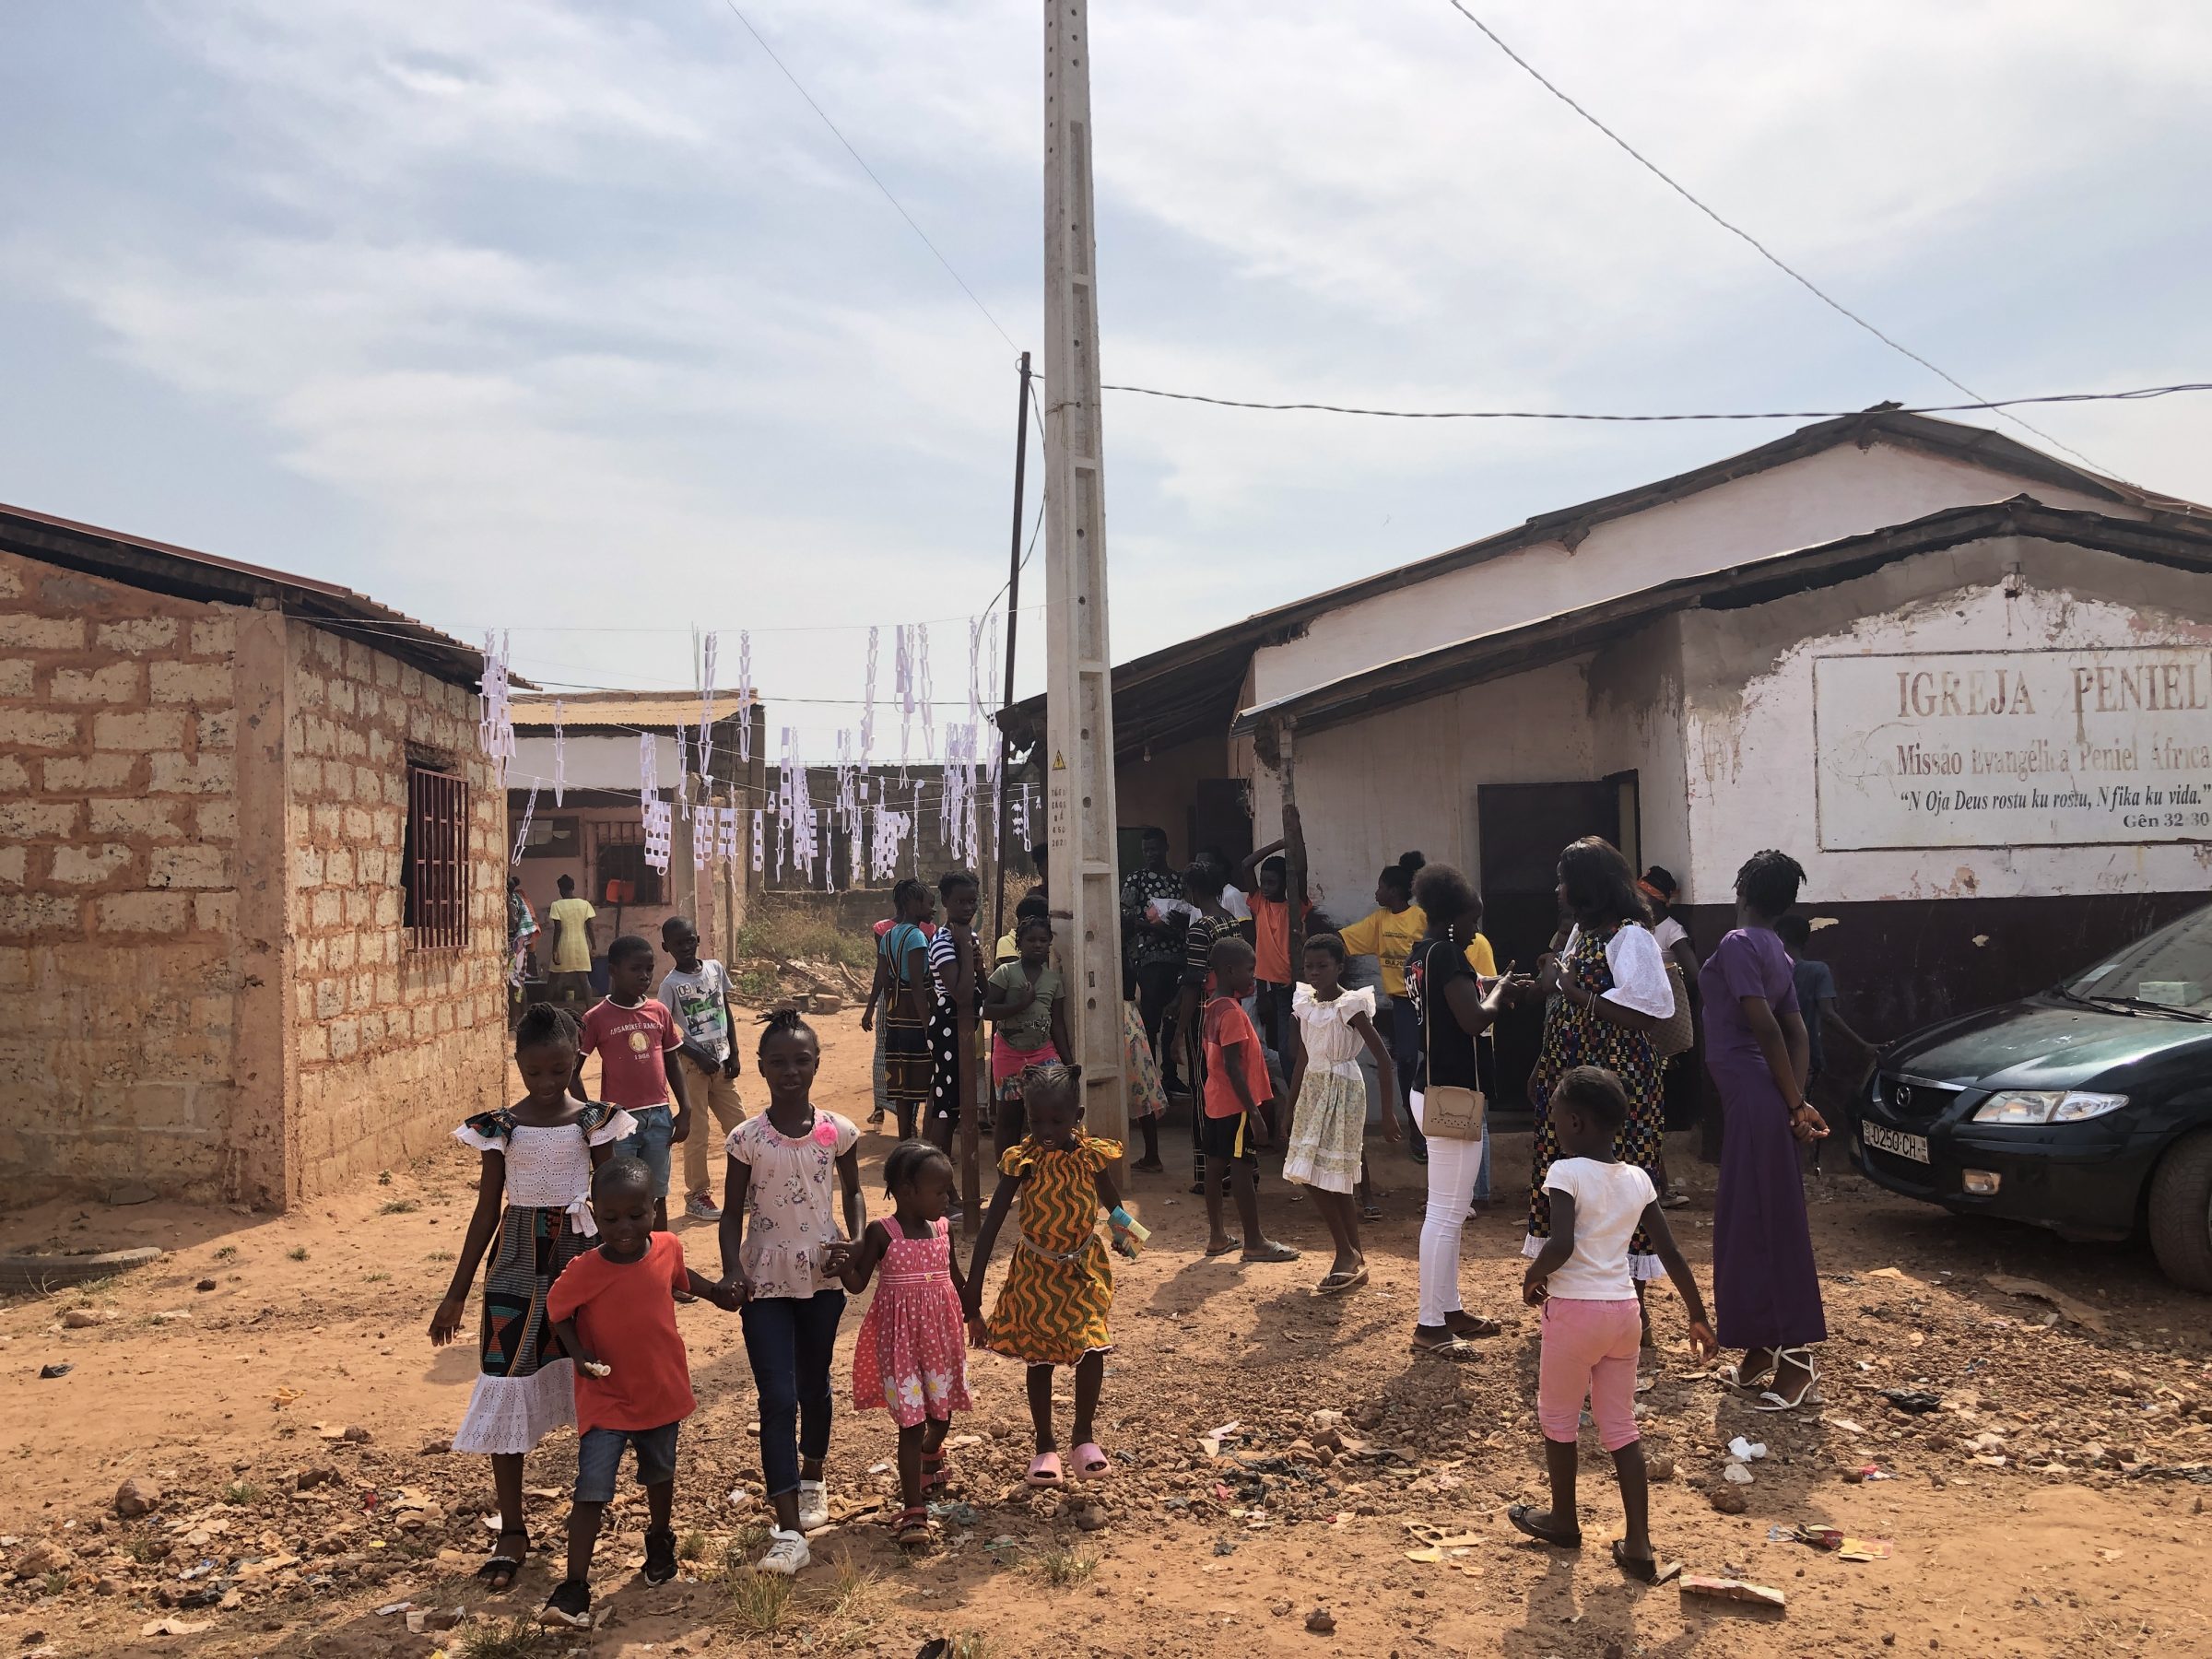 Het schooltje | Overlanden in Guinea Bissau